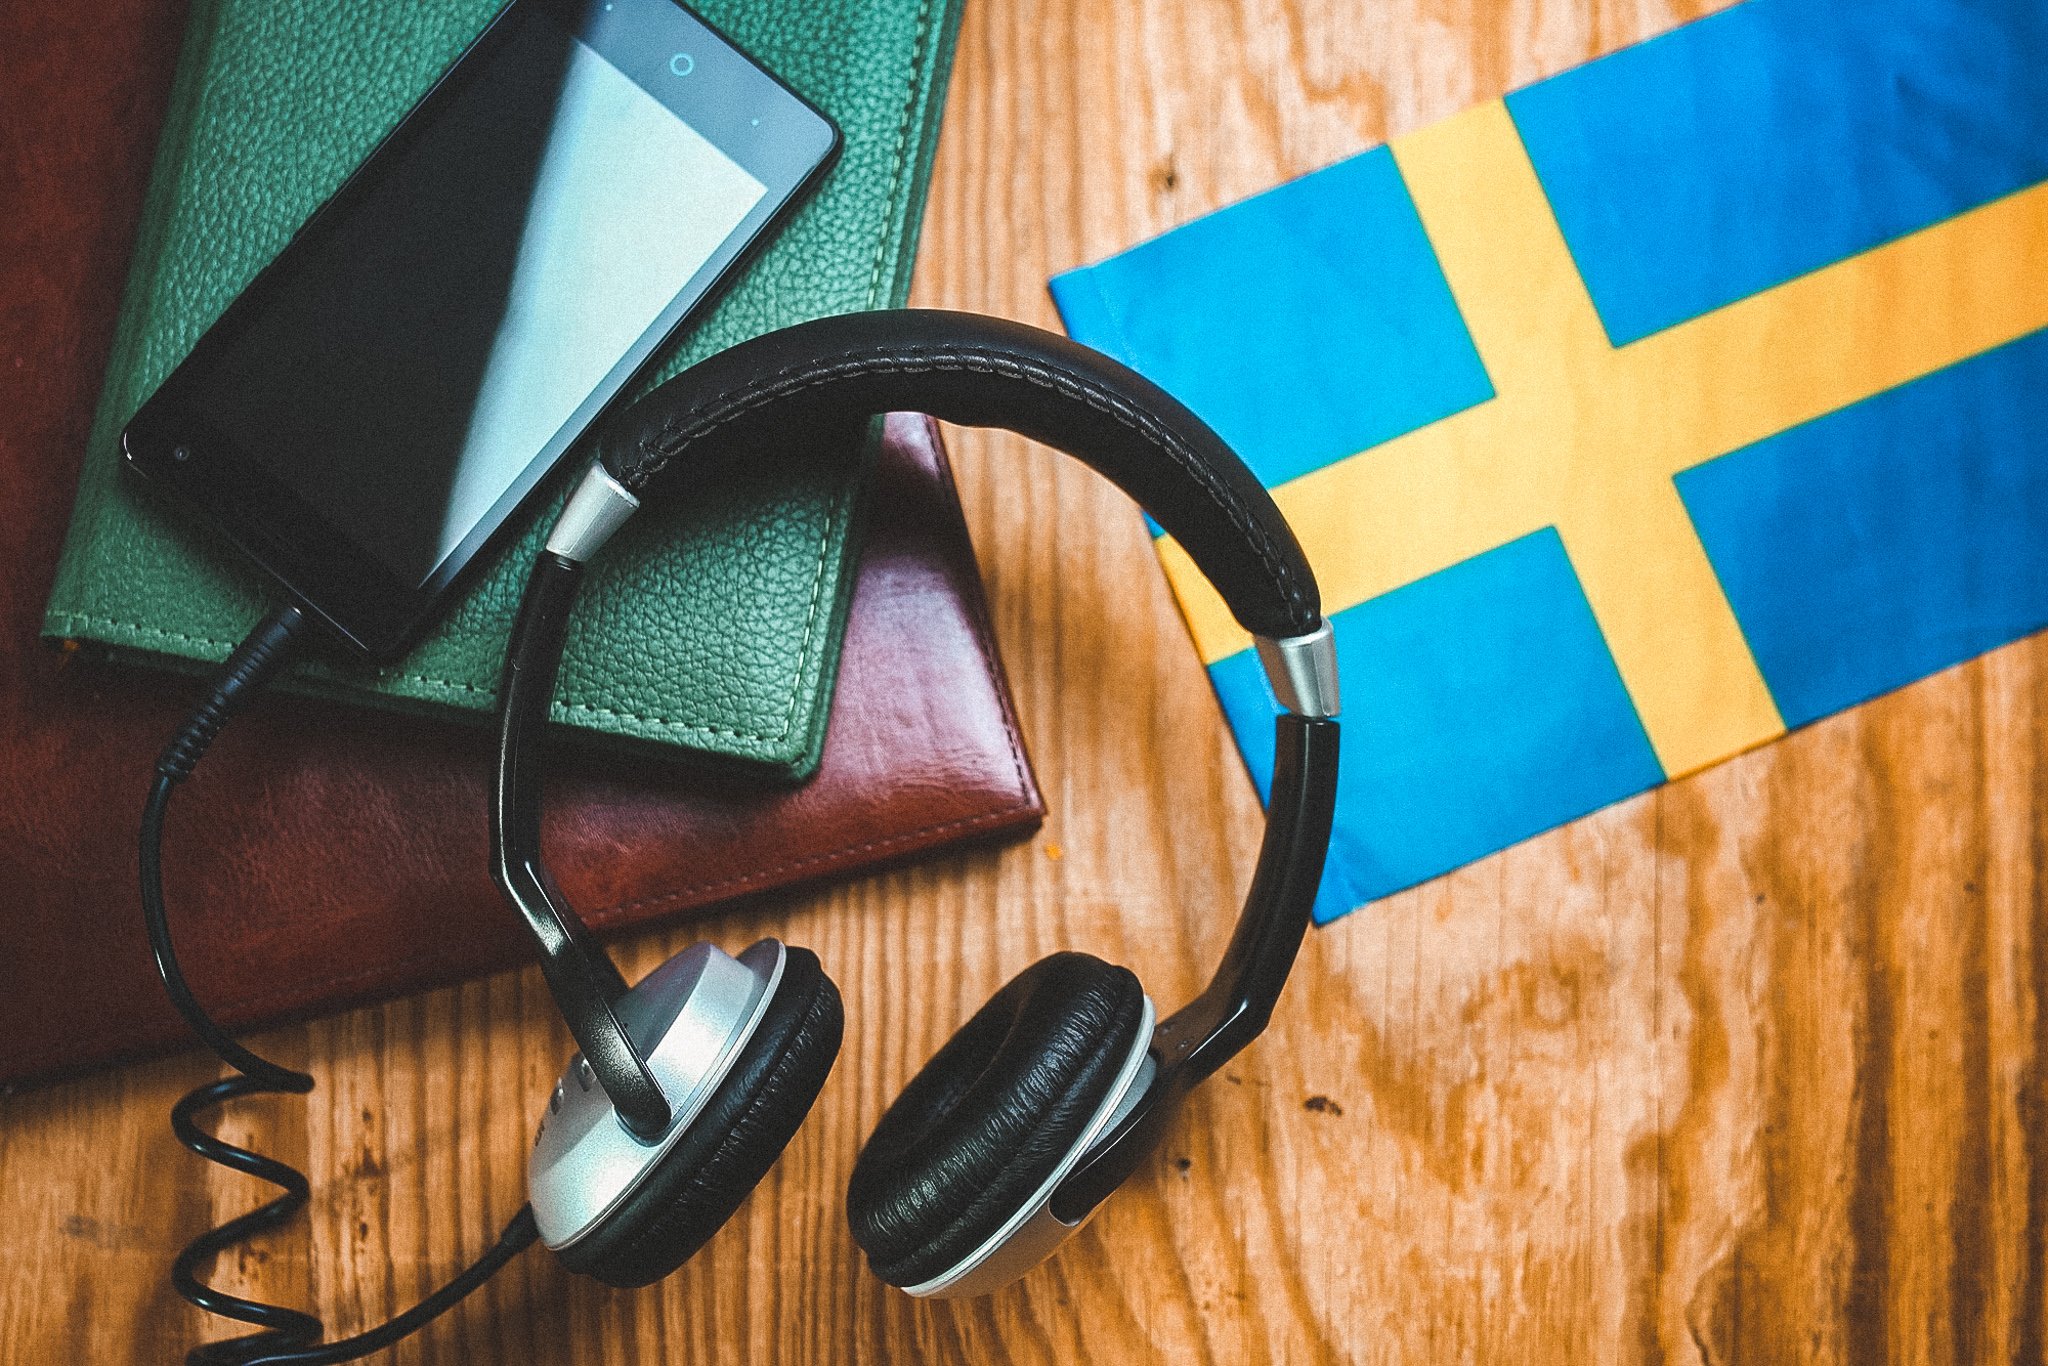 nauka jezyka szwedzkiego w szwecji - Your Ultimate Guide to Sweden - LikeSweden.com - 5 methods to learn Swedish while living in Sweden